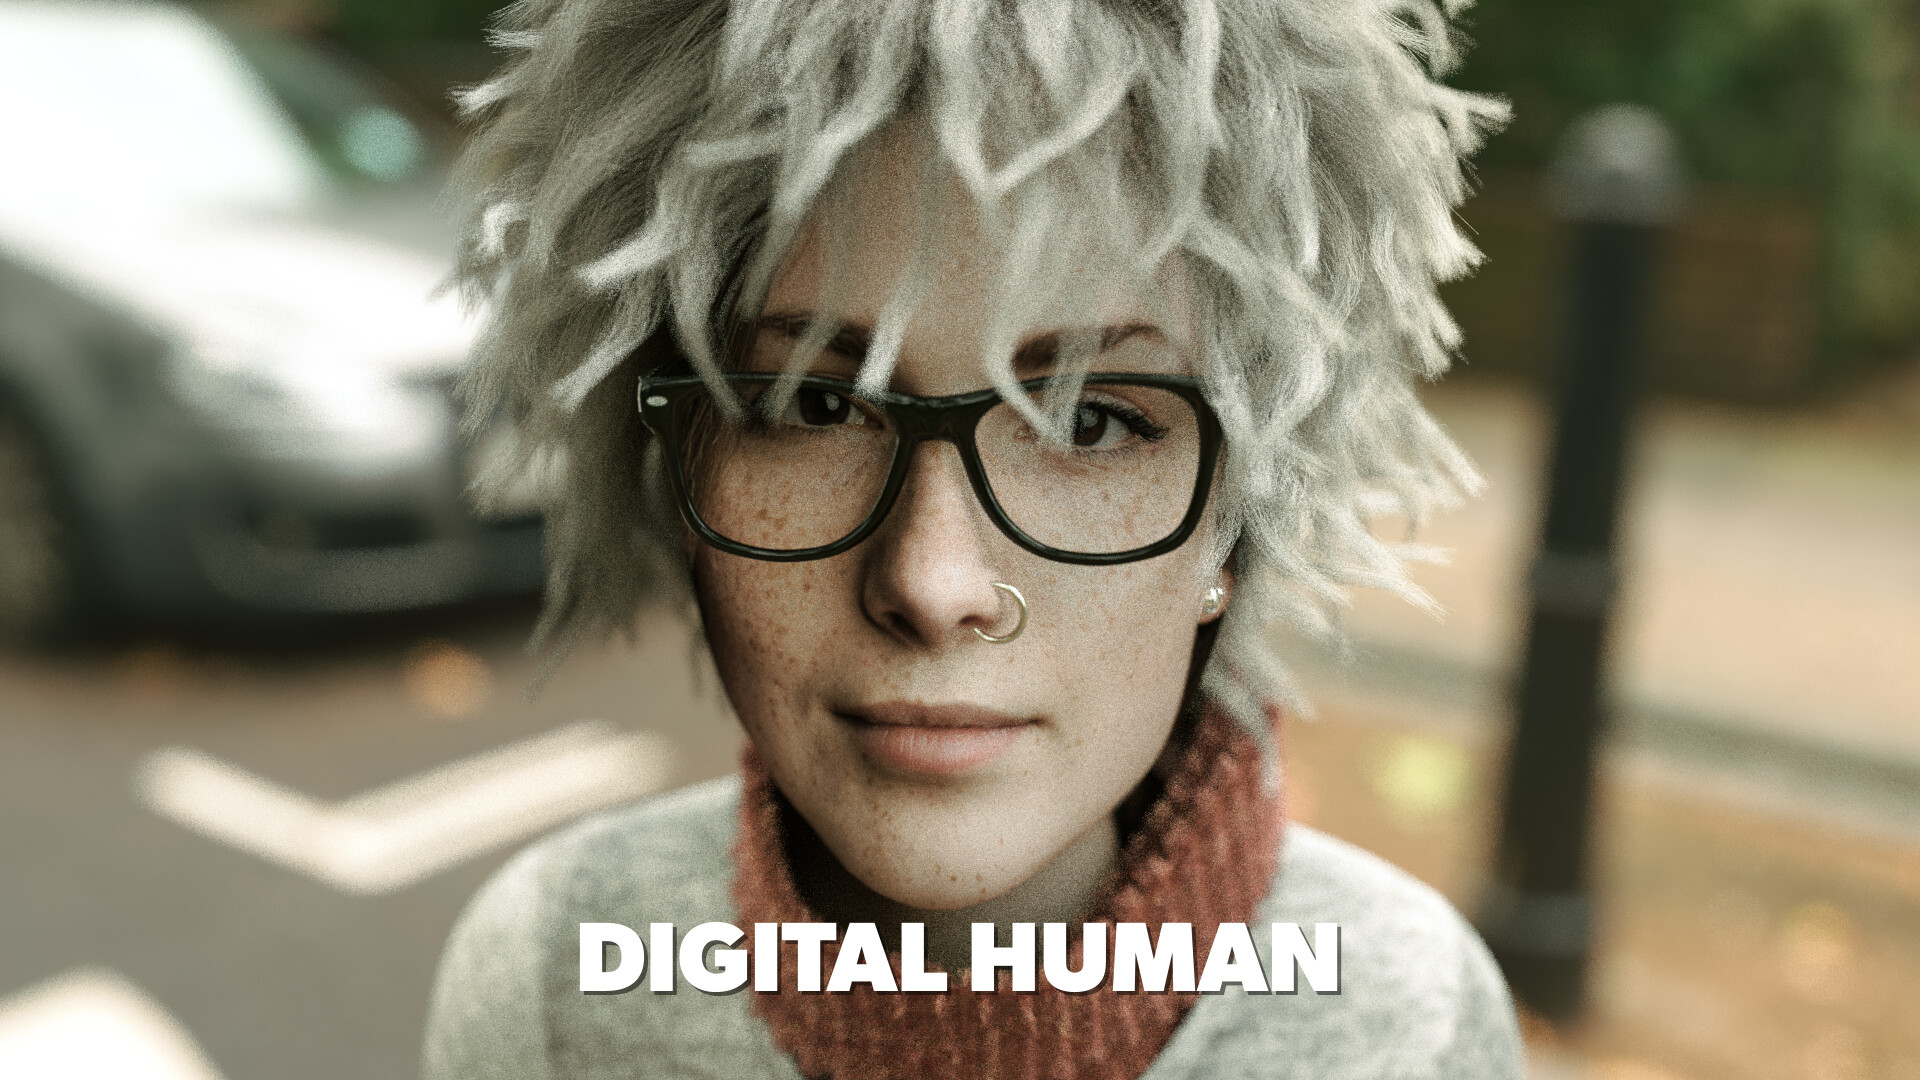 Digital human 